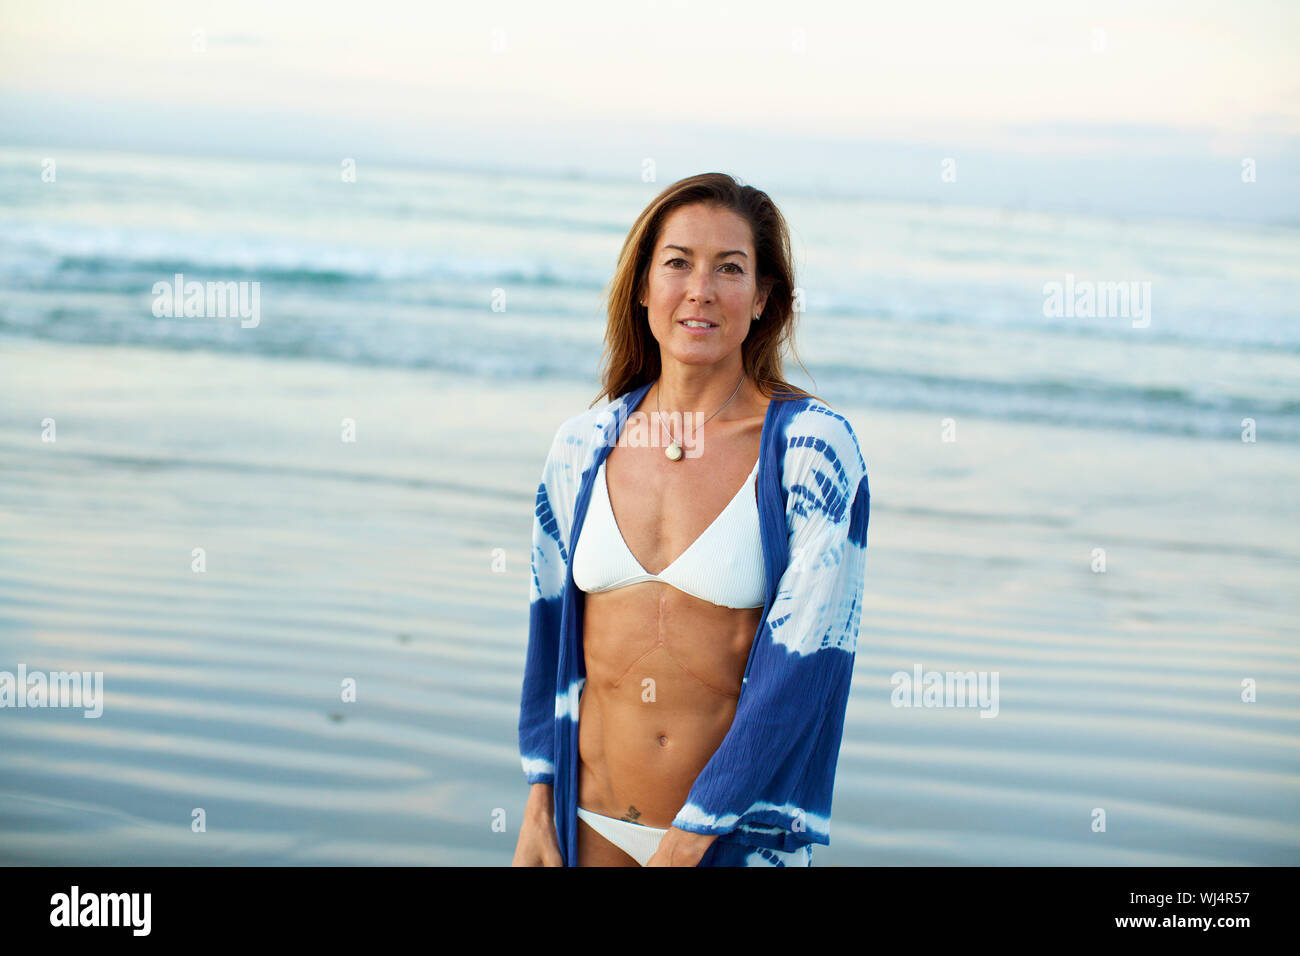 Retrato mujer confía en bikini en la playa. Foto de stock